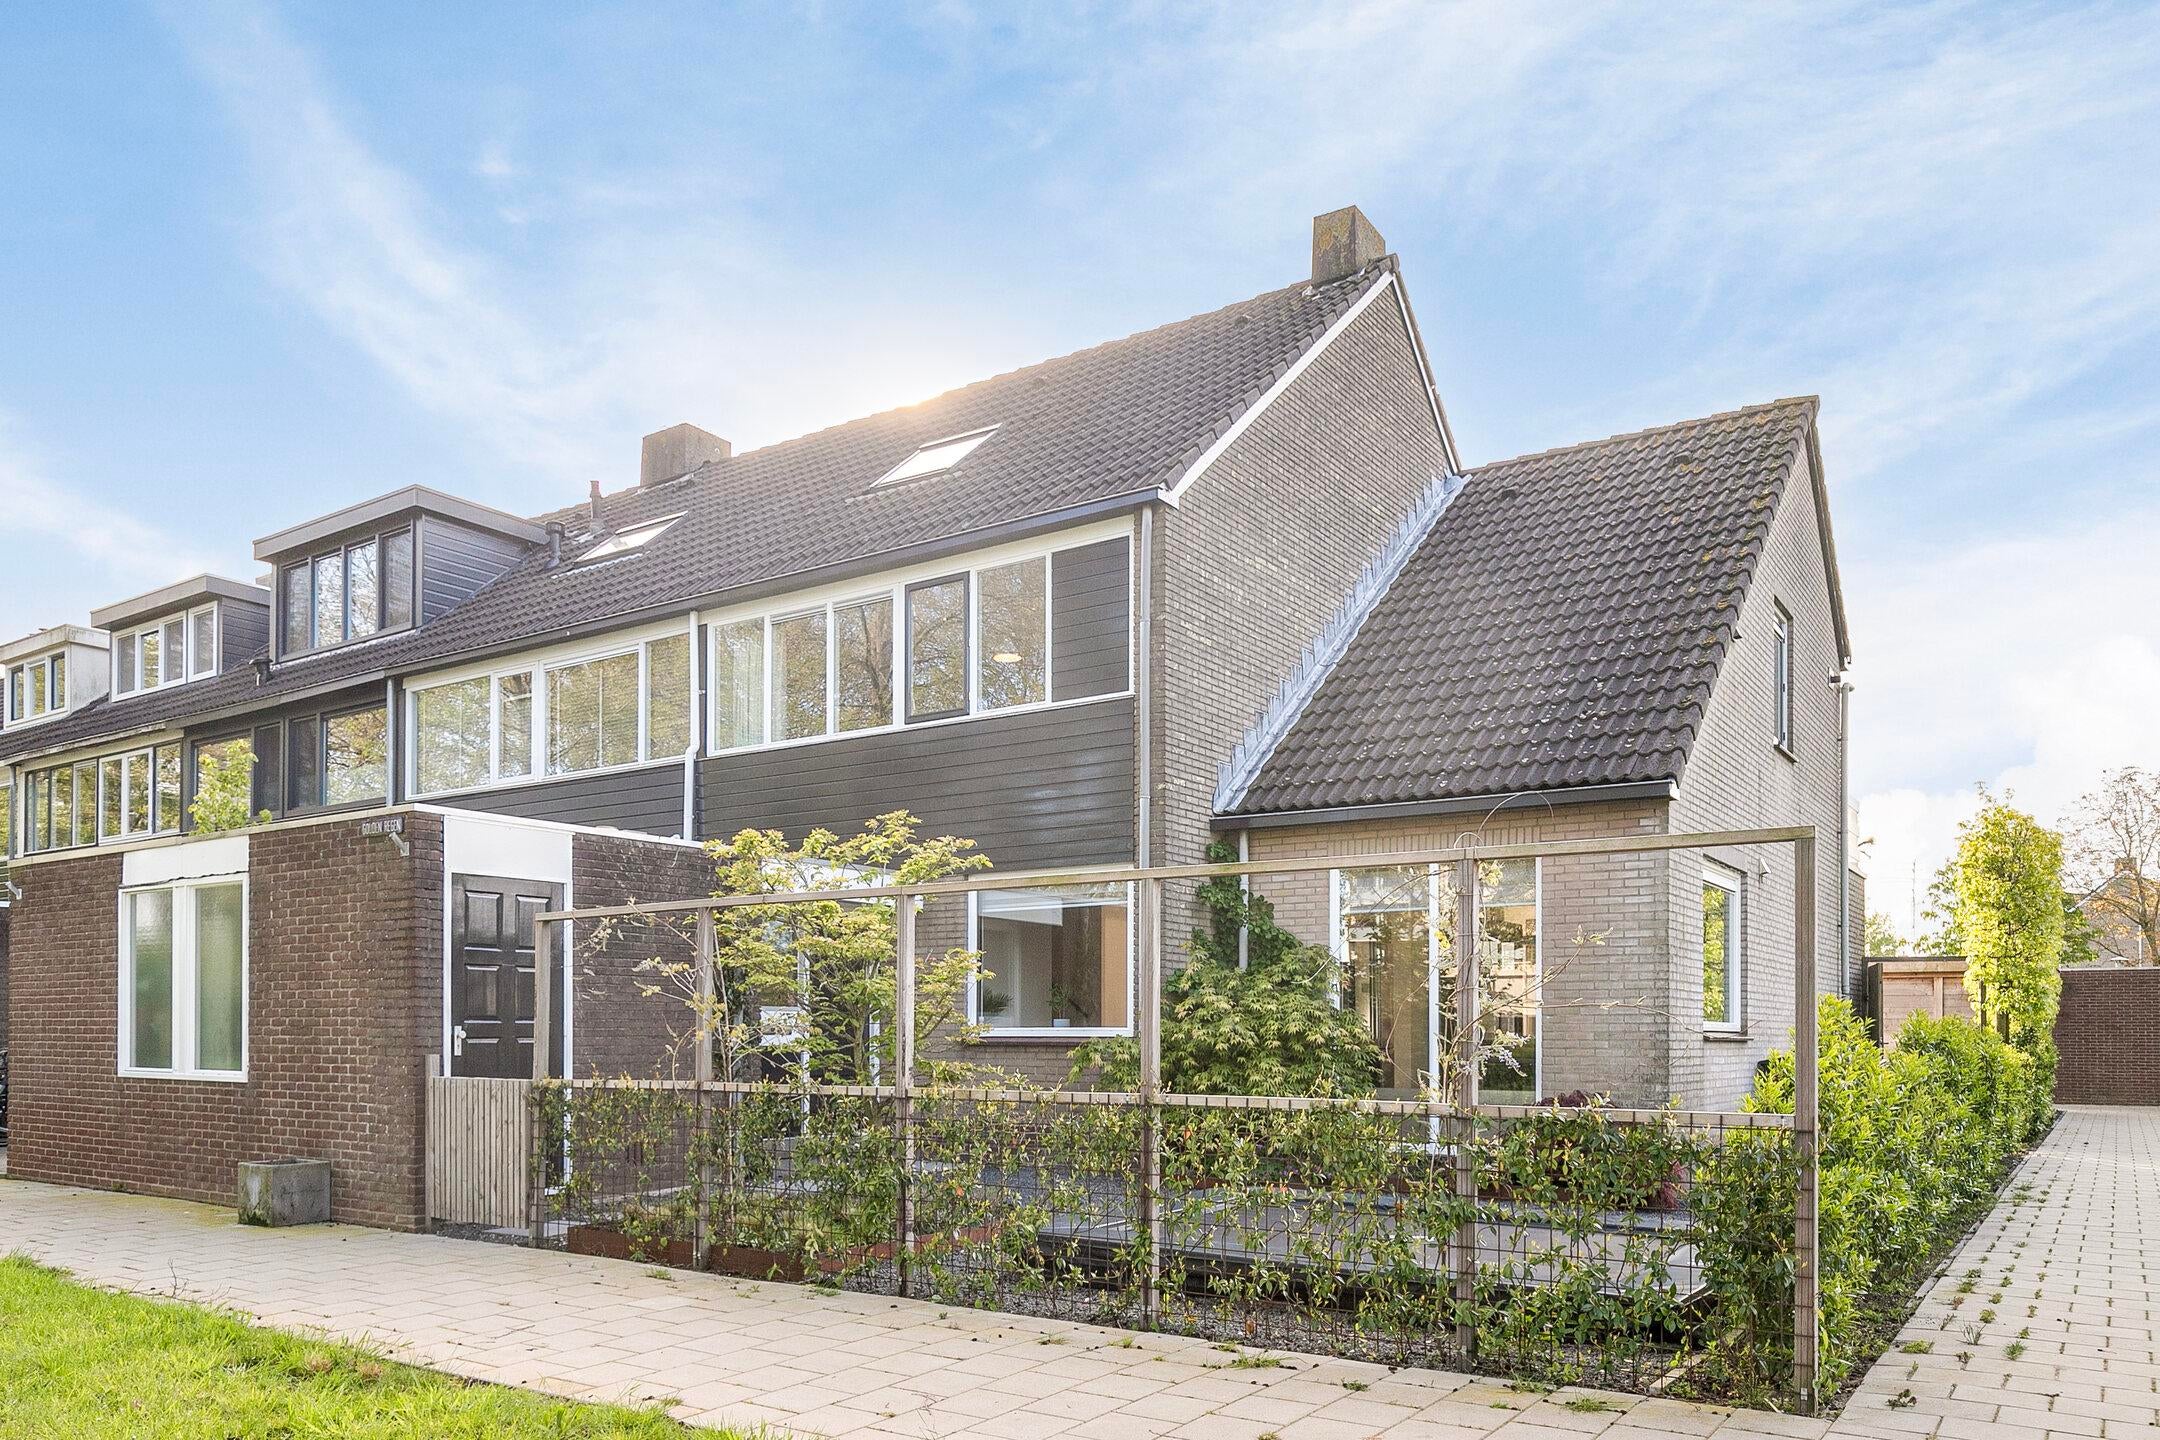 Bekijk foto 1/52 van house in Krimpen aan den IJssel